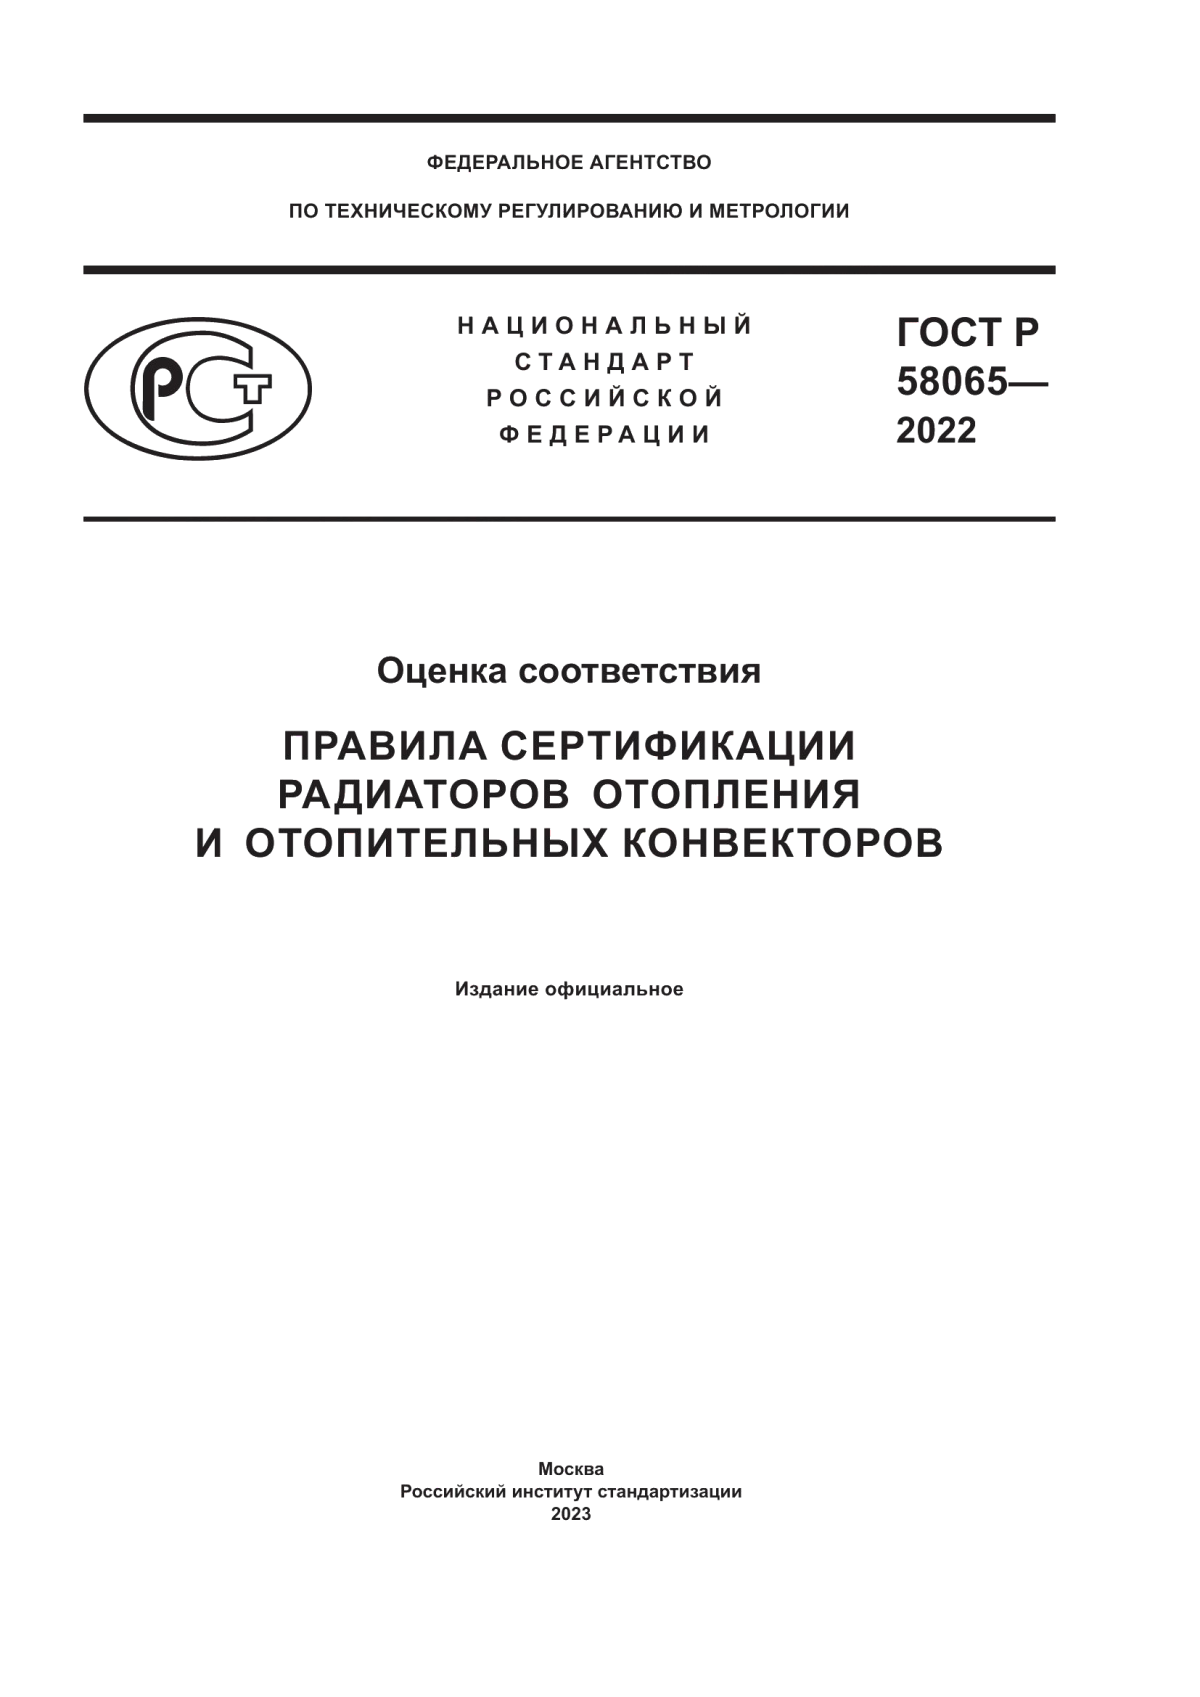 ГОСТ Р 58065-2022 Оценка соответствия. Правила сертификации радиаторов отопления и отопительных конвекторов